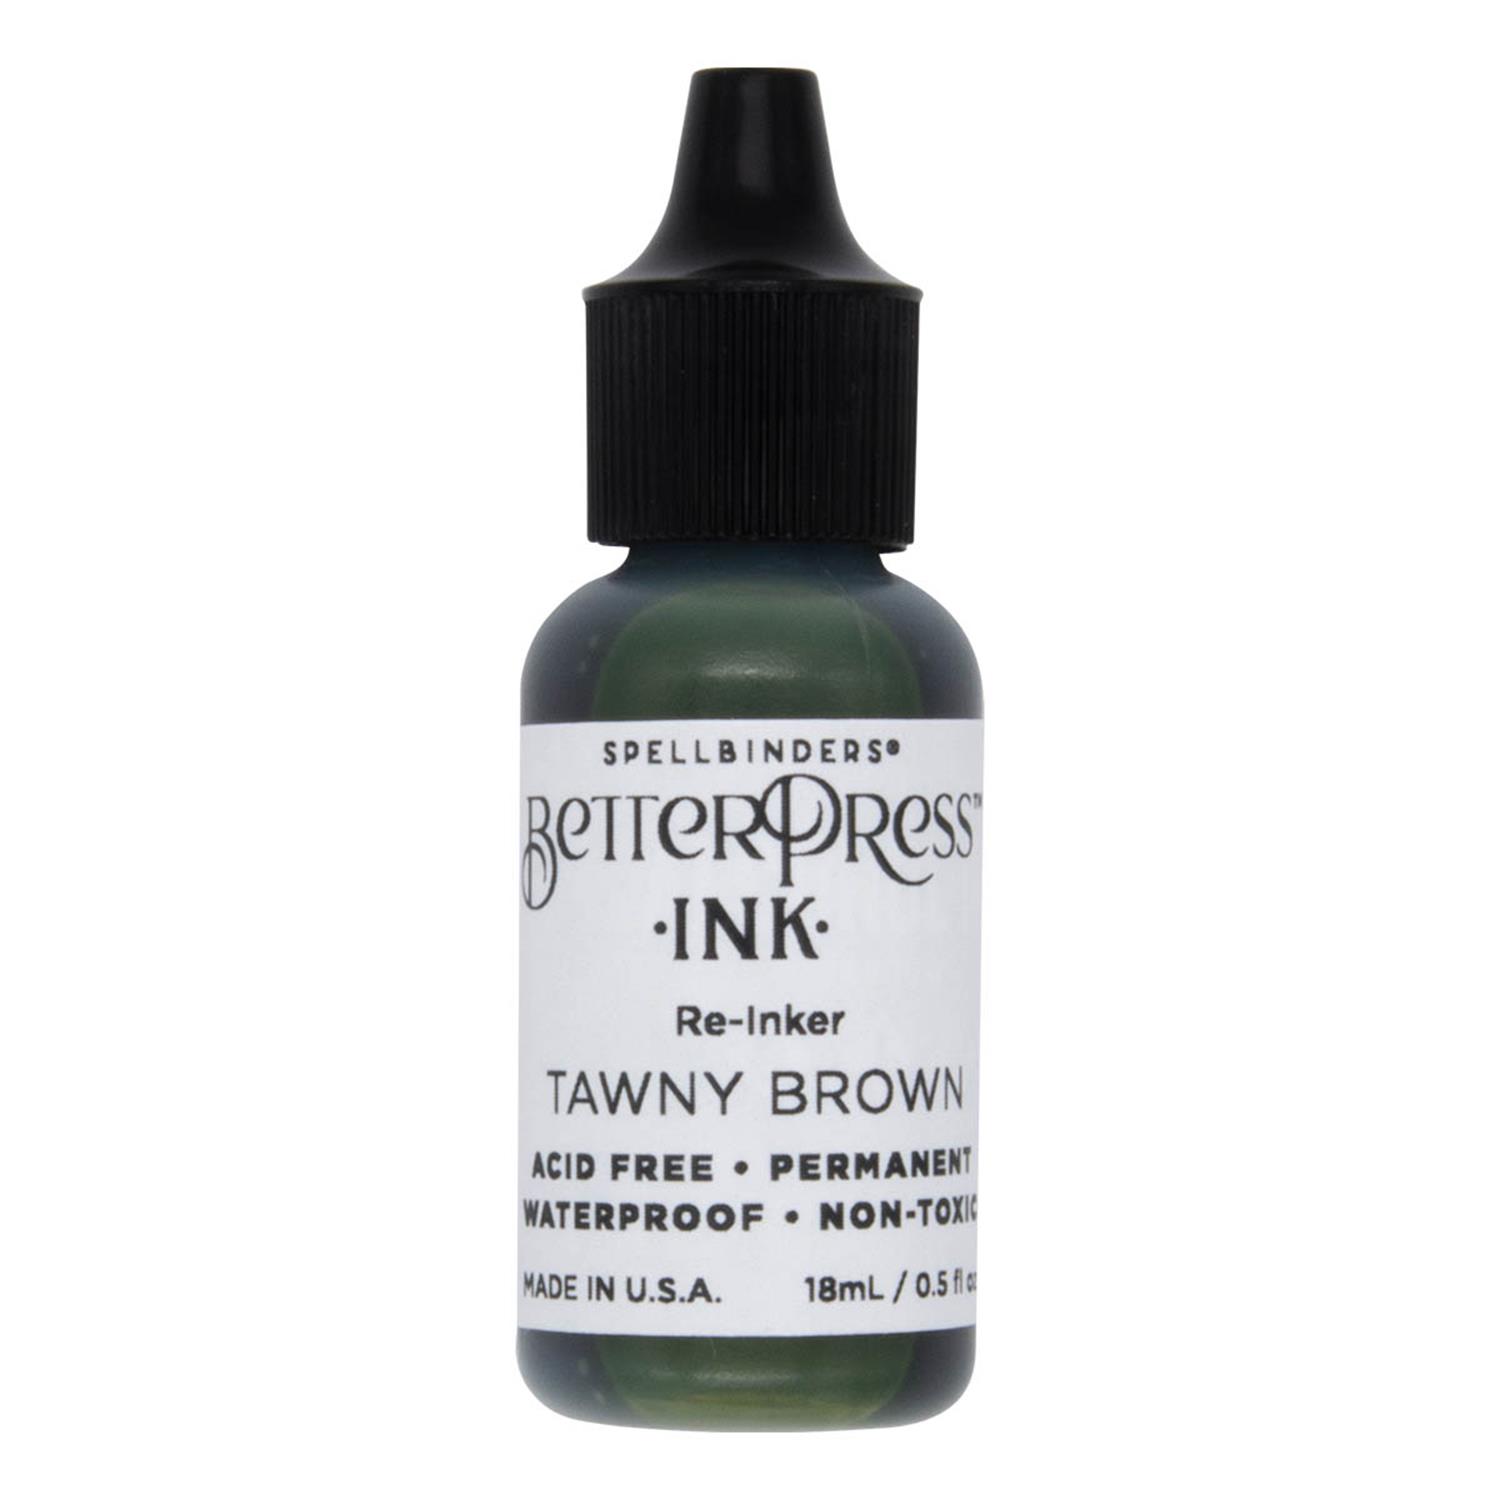 Spellbinders BetterPress Ink Re-Inker Pick N Mix - Choose 2 - Tawny Brown